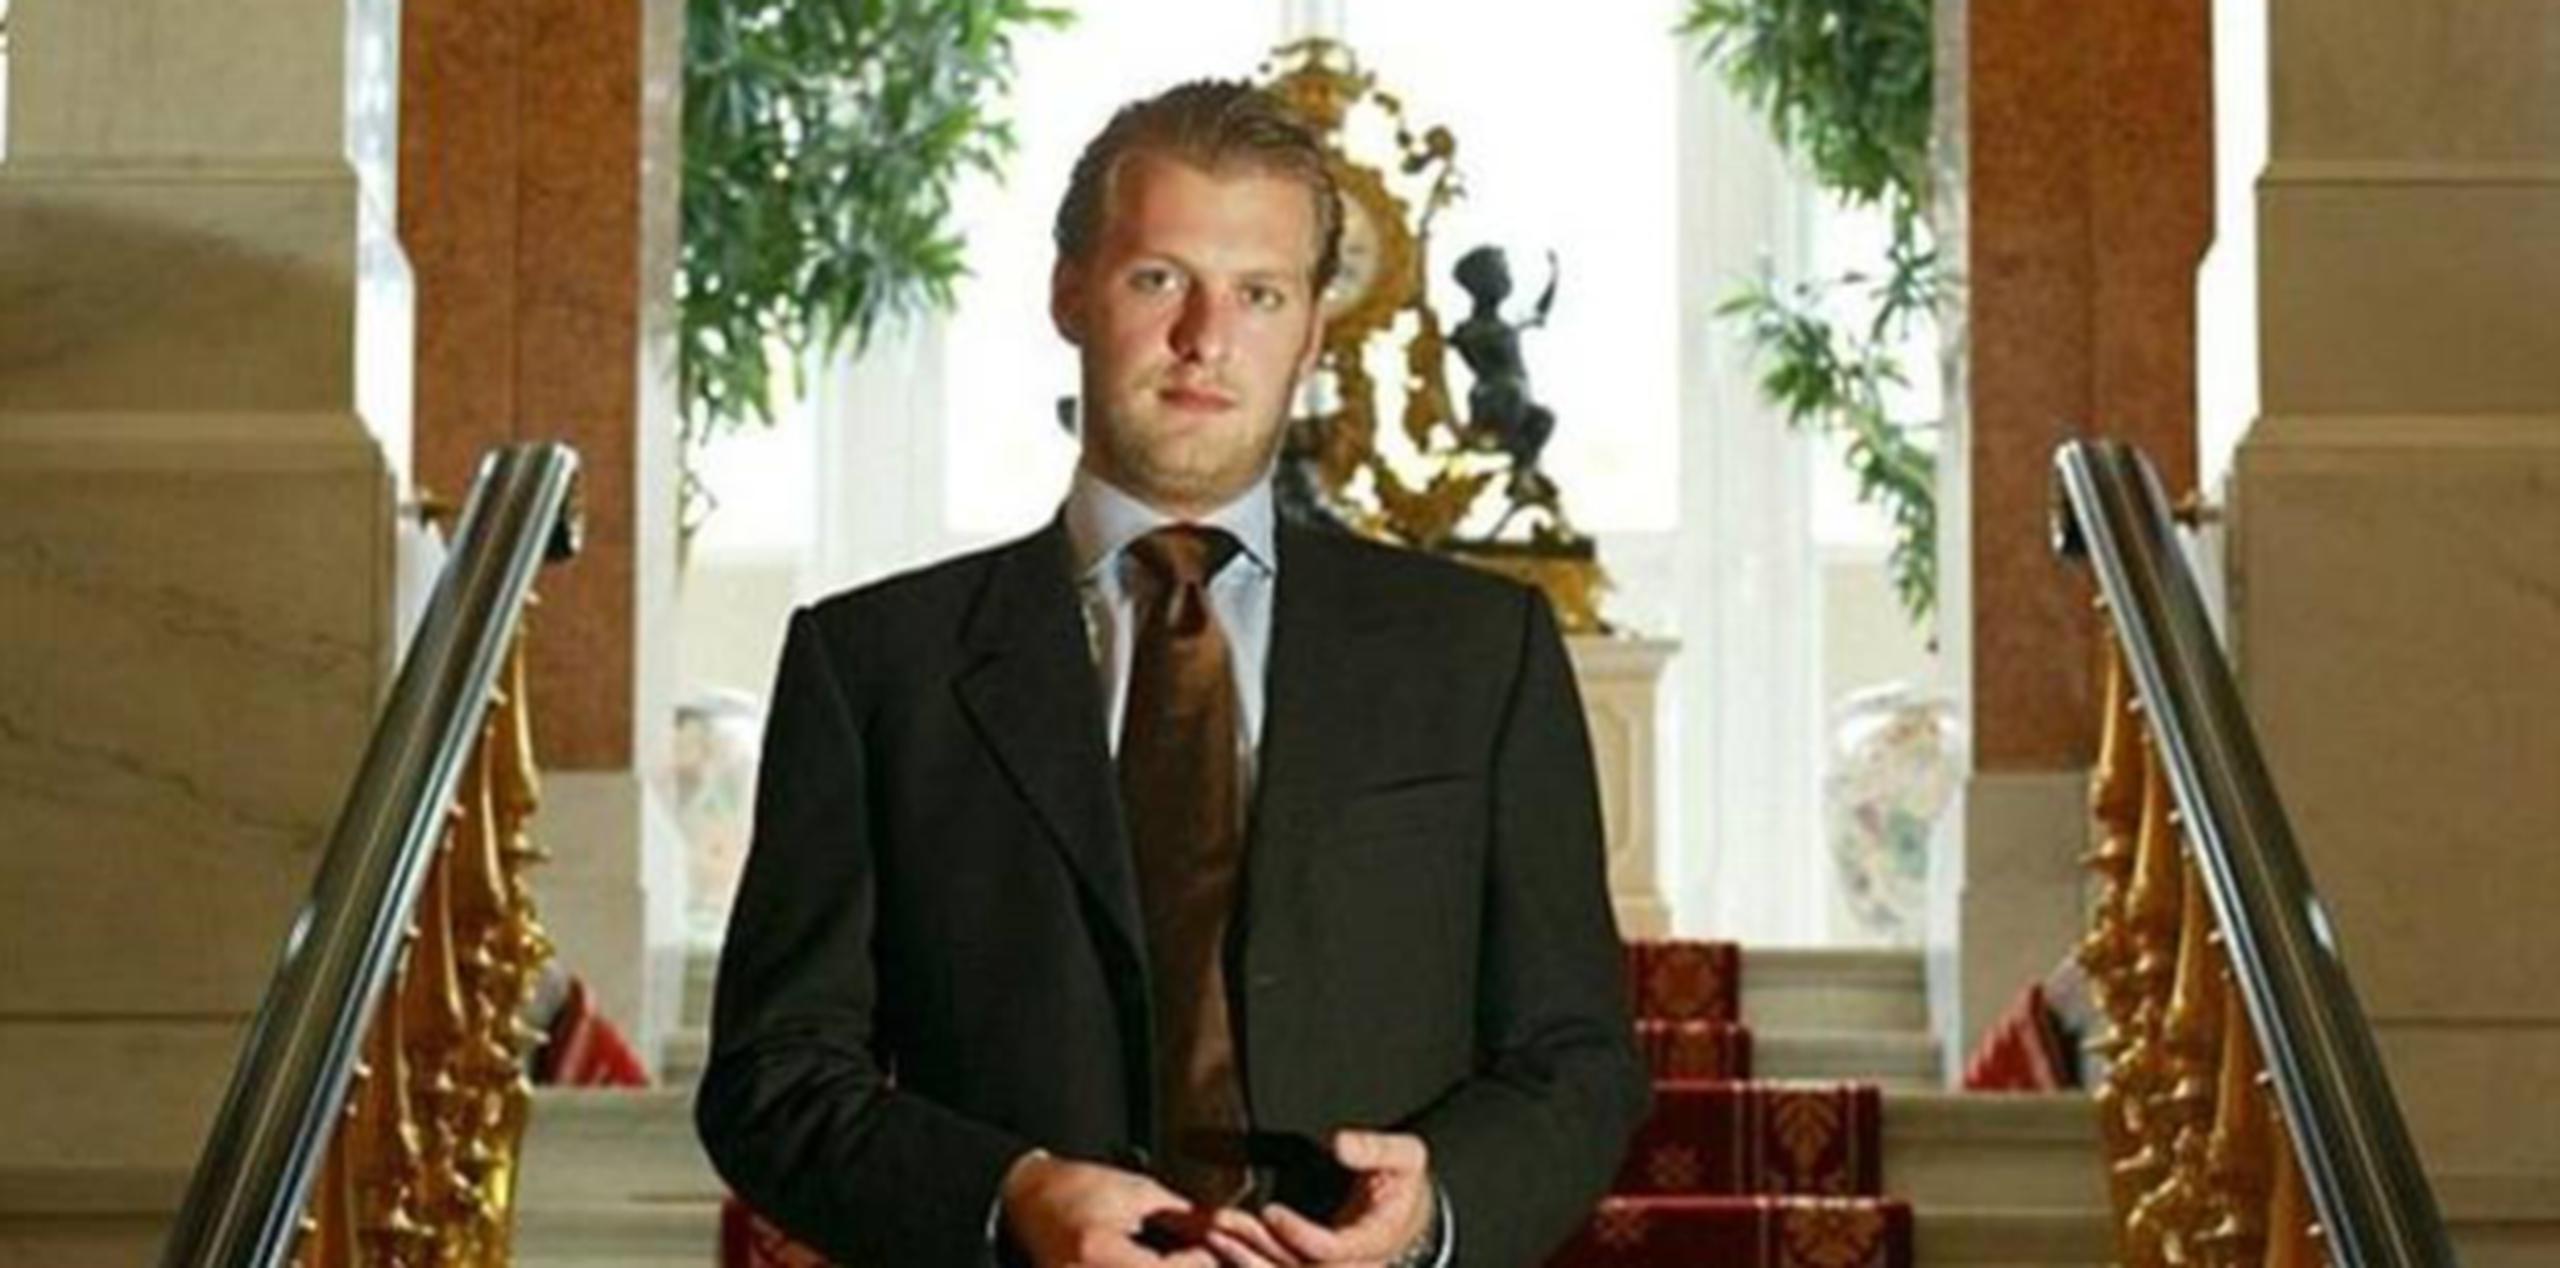 Carlos Patricio Godehard pertenece a la familia real de los Hohenzollern. (Vía ABC)